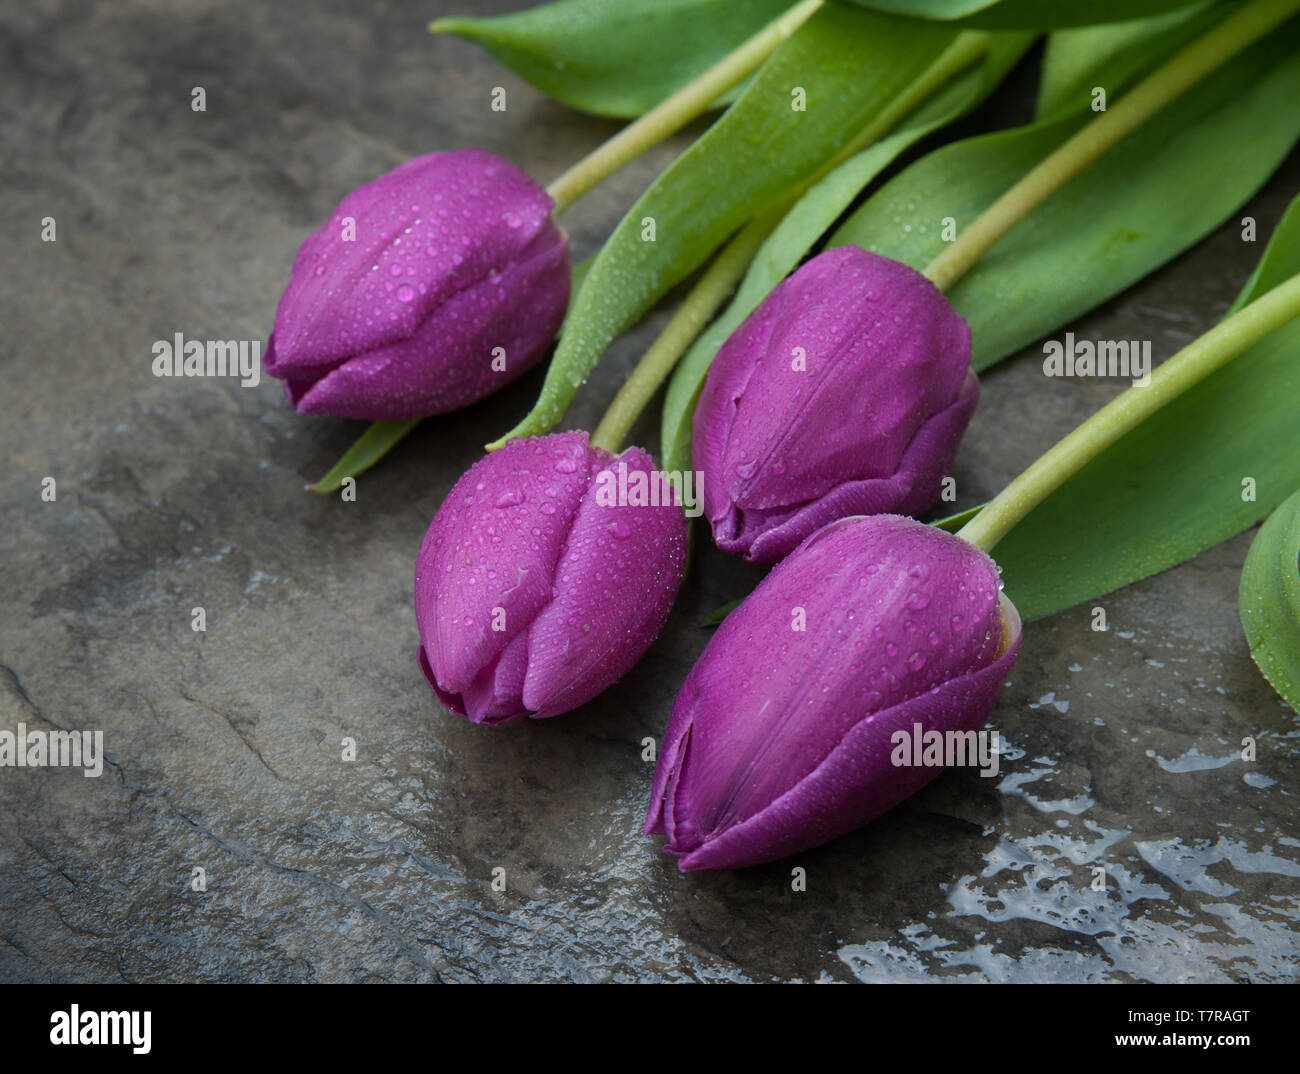 Cuatro Tulipanes púrpura sobre una superficie gris Foto de stock